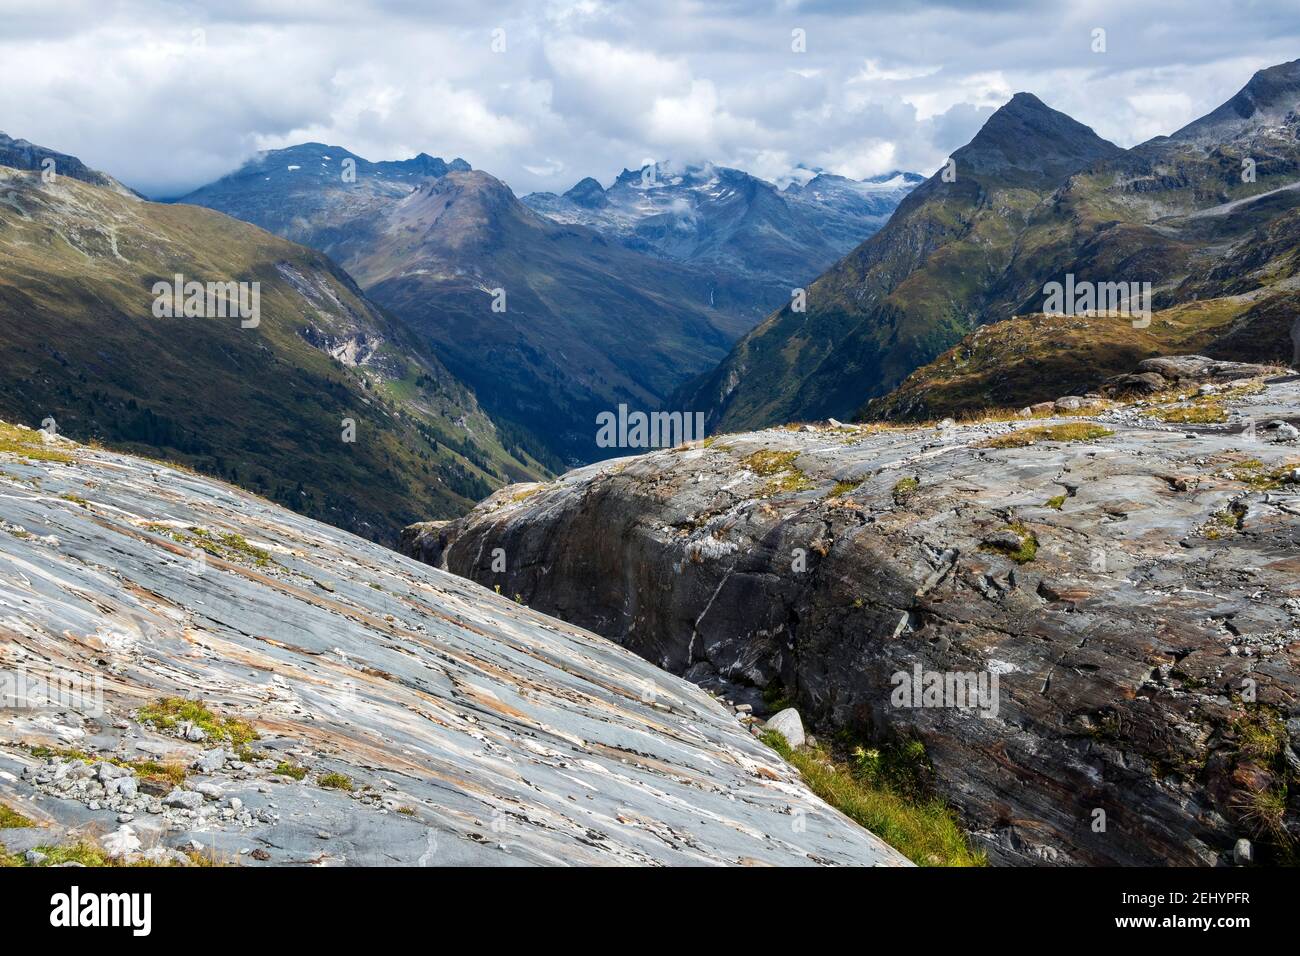 Vom Gletscher geglättete Felsen. Tauerntal. Venediger Berggruppe. Osttirol. Österreichische Alpen. Europa Stockfoto